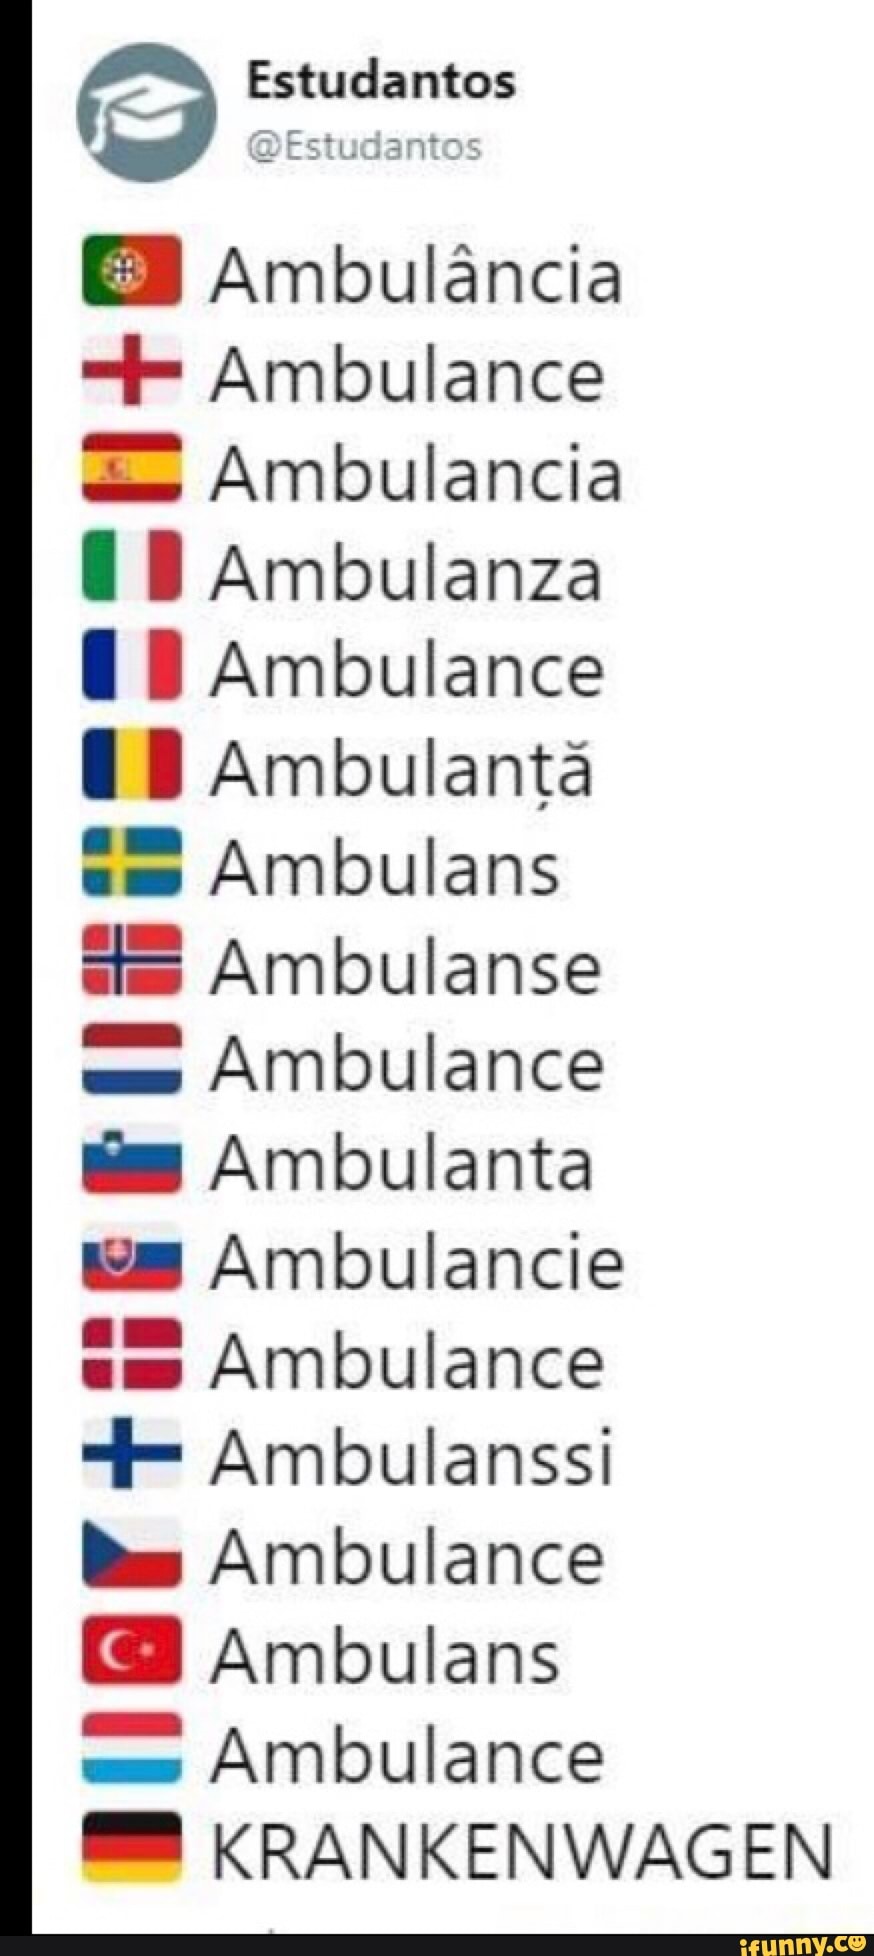 Language differencies Ambulanza Ambulance Ambulance Ambulancia rH =  KRANKENWAGEN! - iFunny Brazil